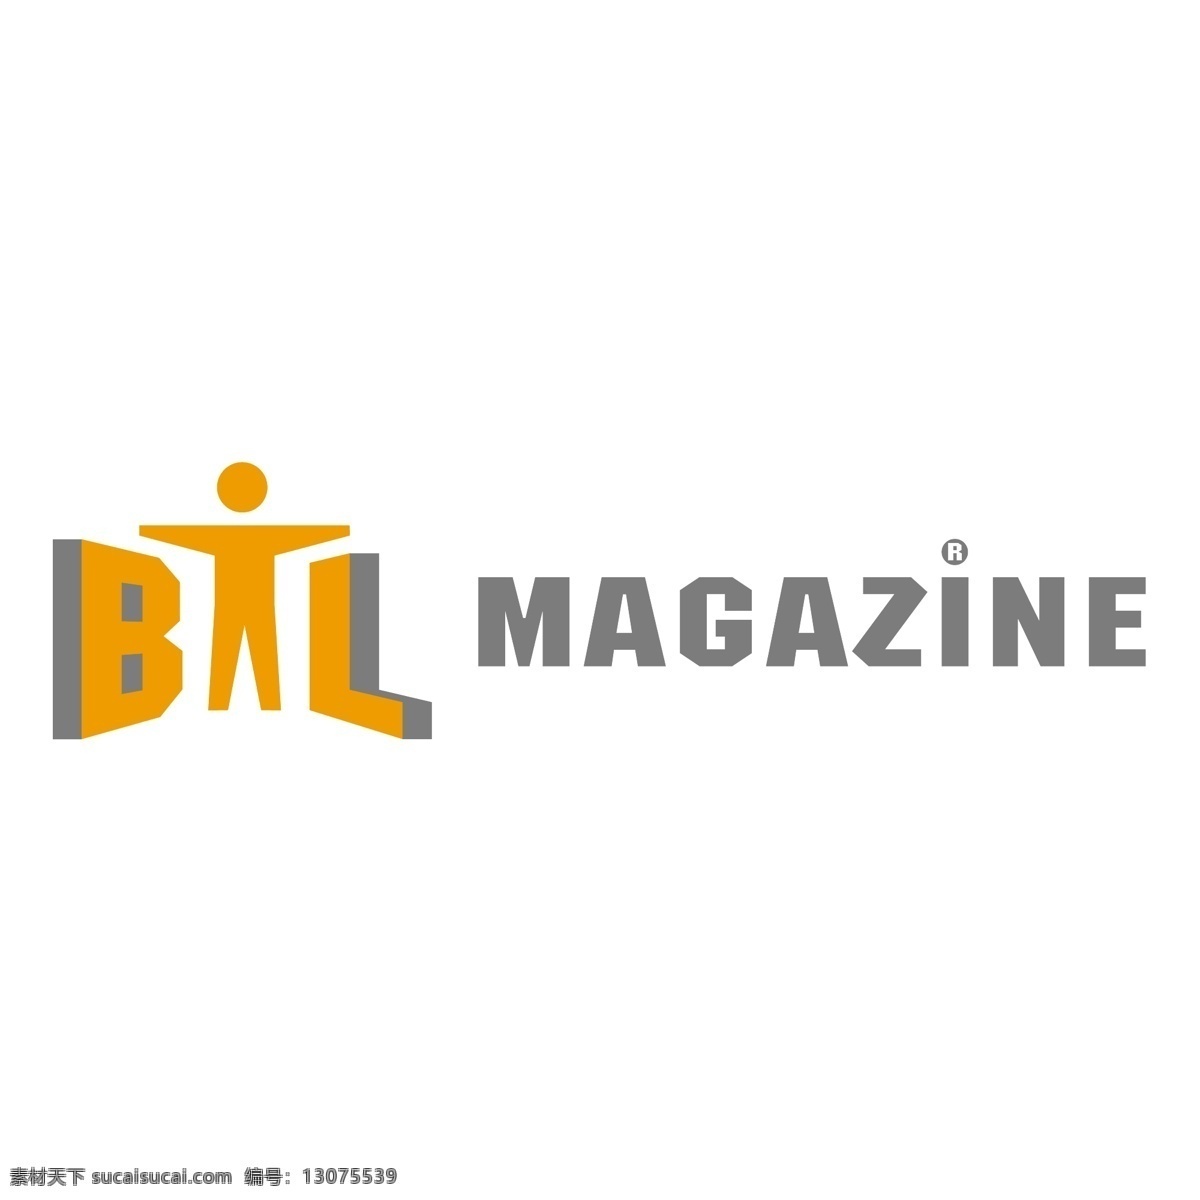 btl杂志 btl 杂志 矢量 图像 自由 自由的载体 向量 免费 杂志设计 矢量艺术 白色